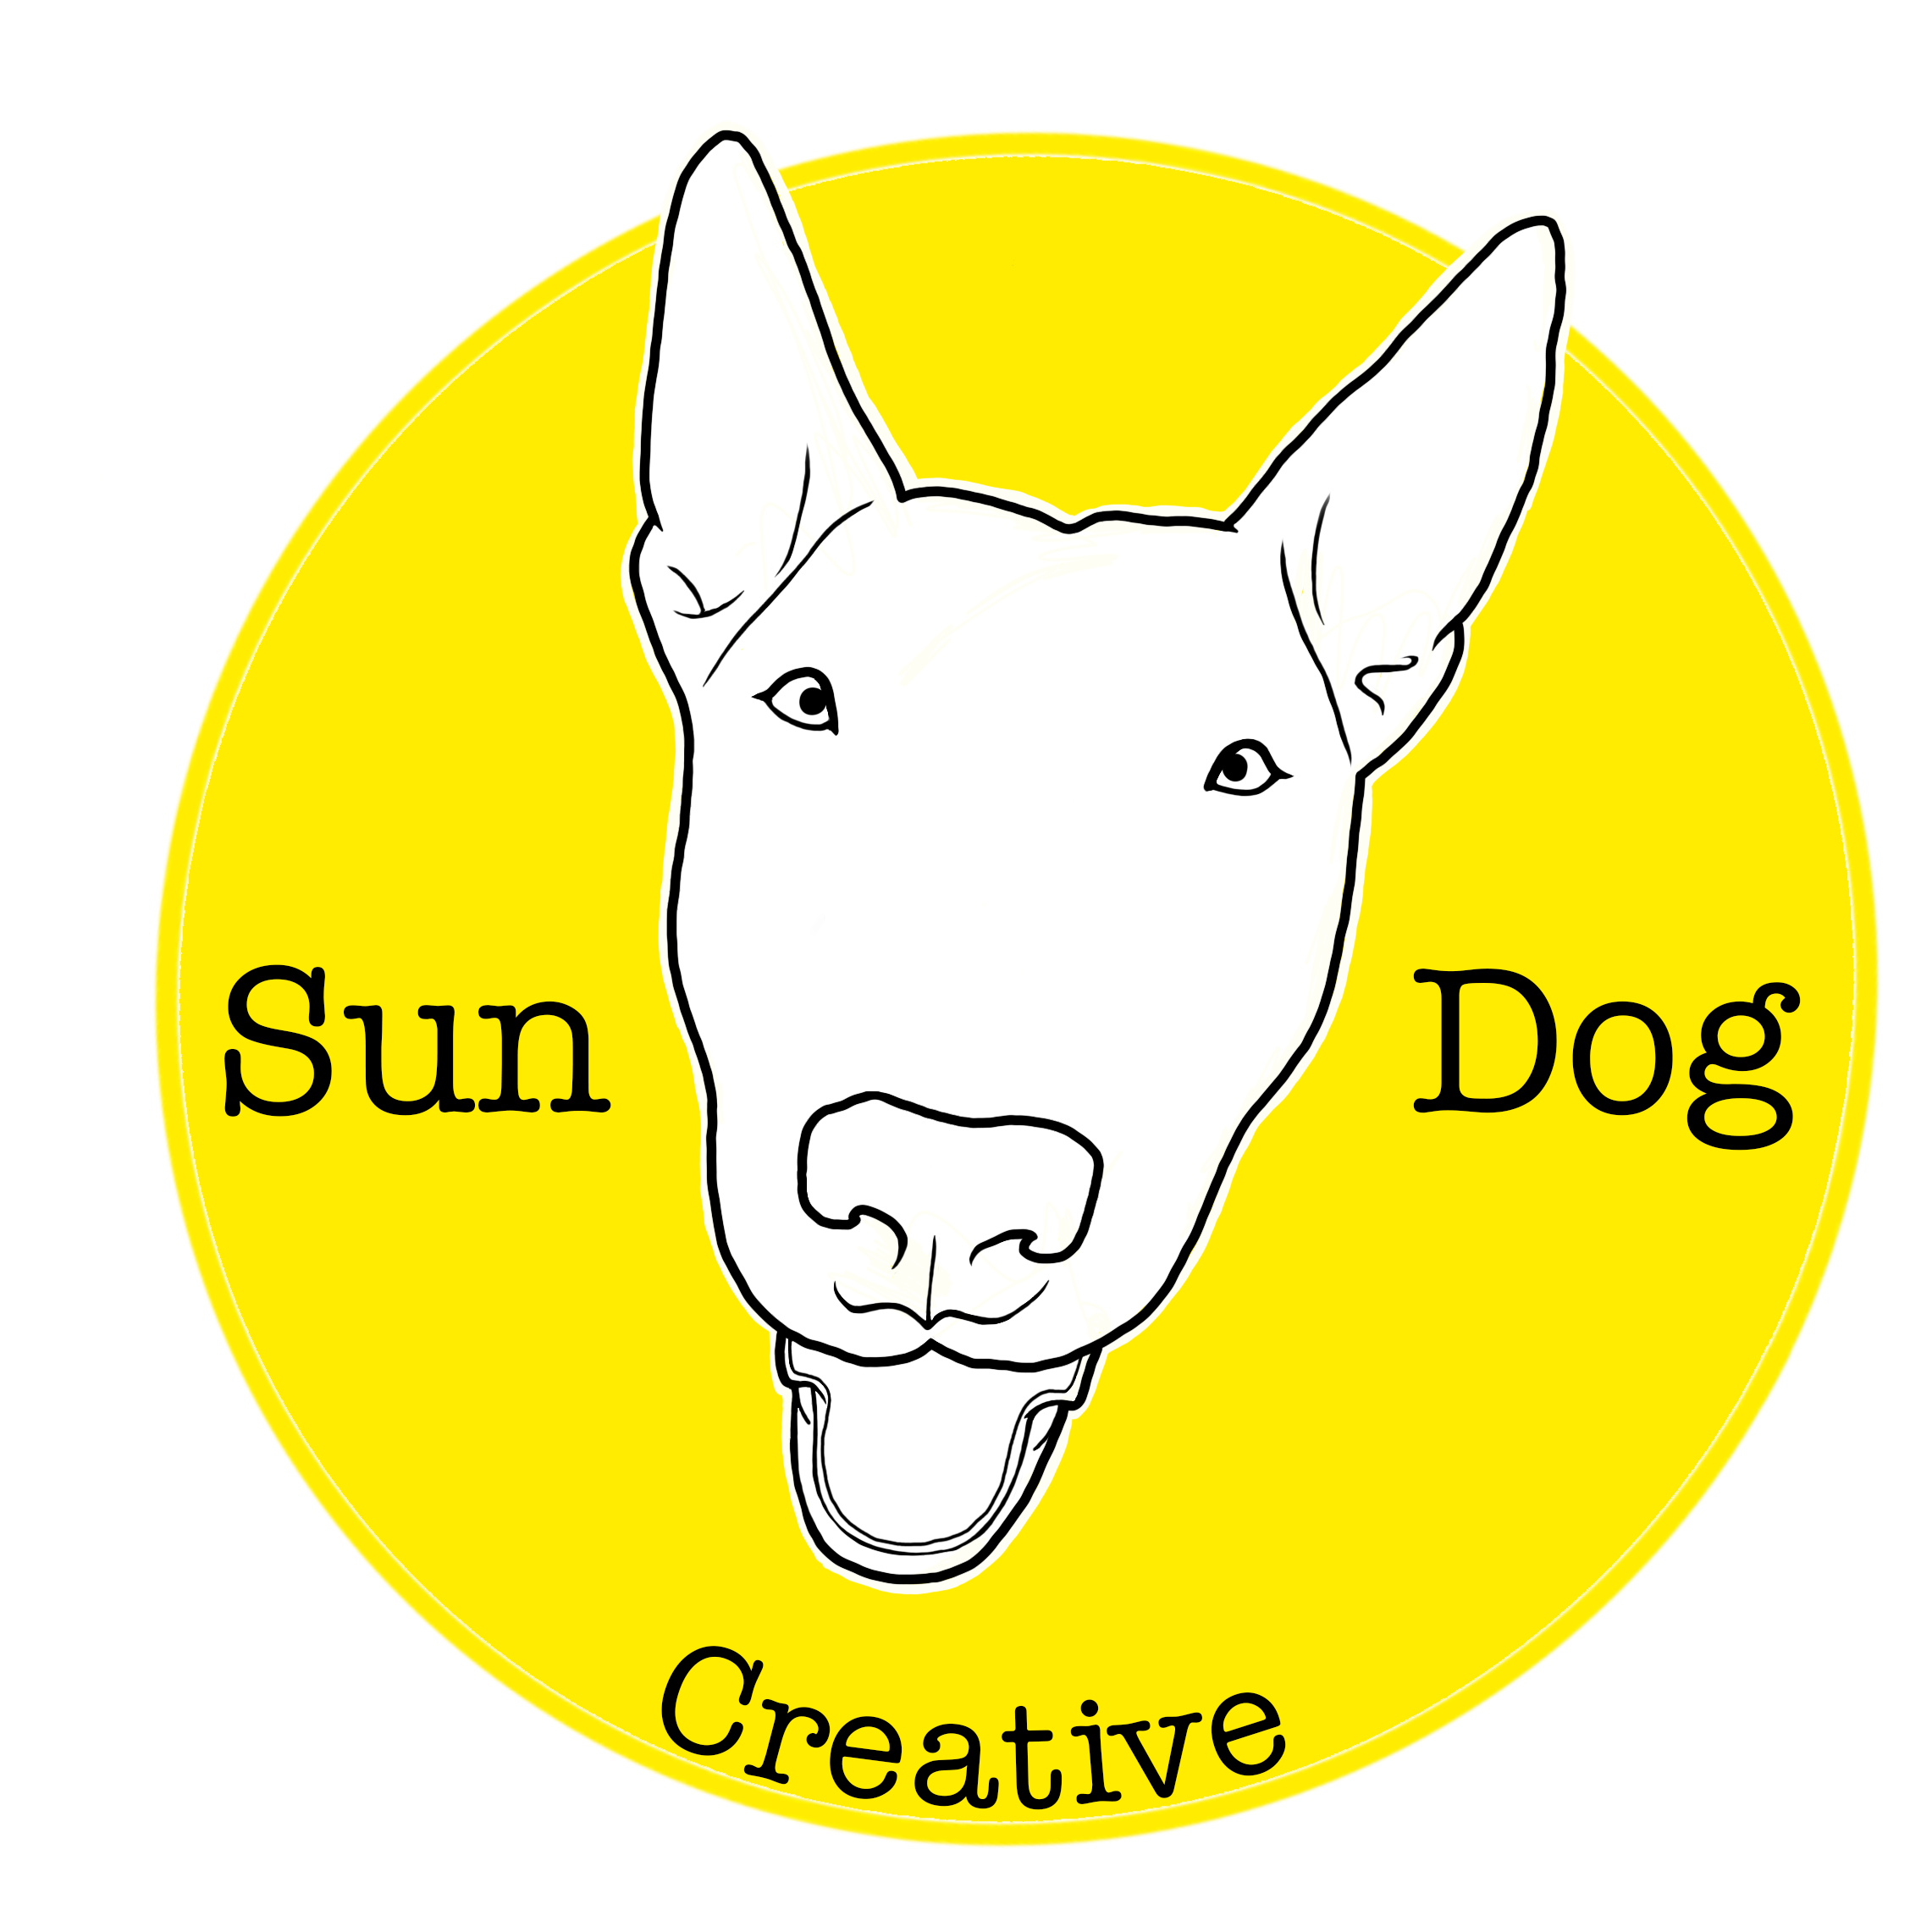 Sun Dog Creative